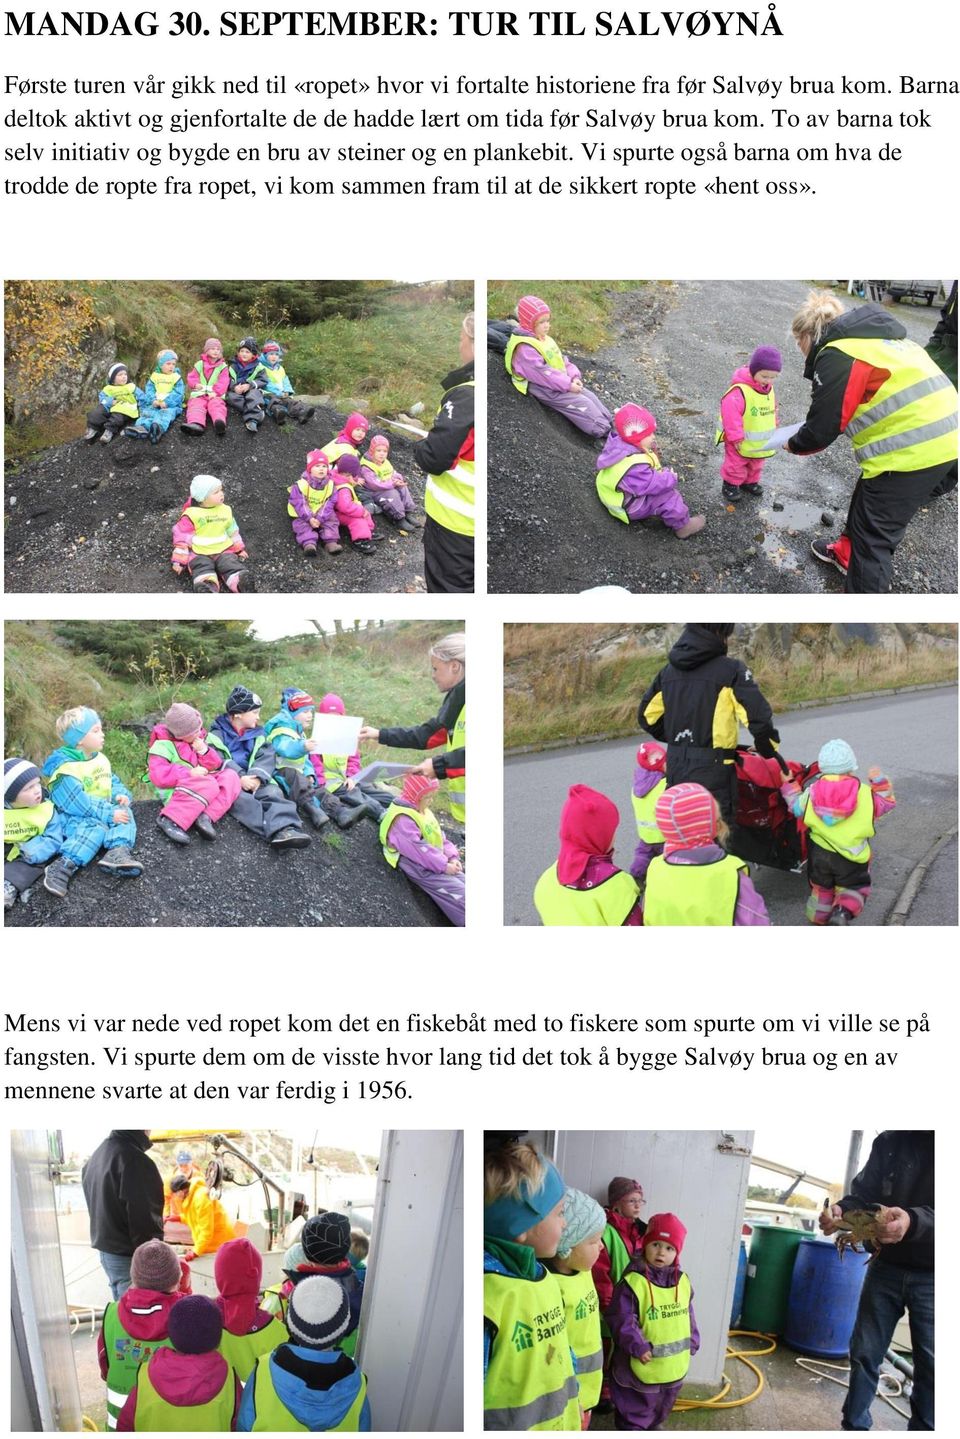 To av barna tok selv initiativ og bygde en bru av steiner og en plankebit.